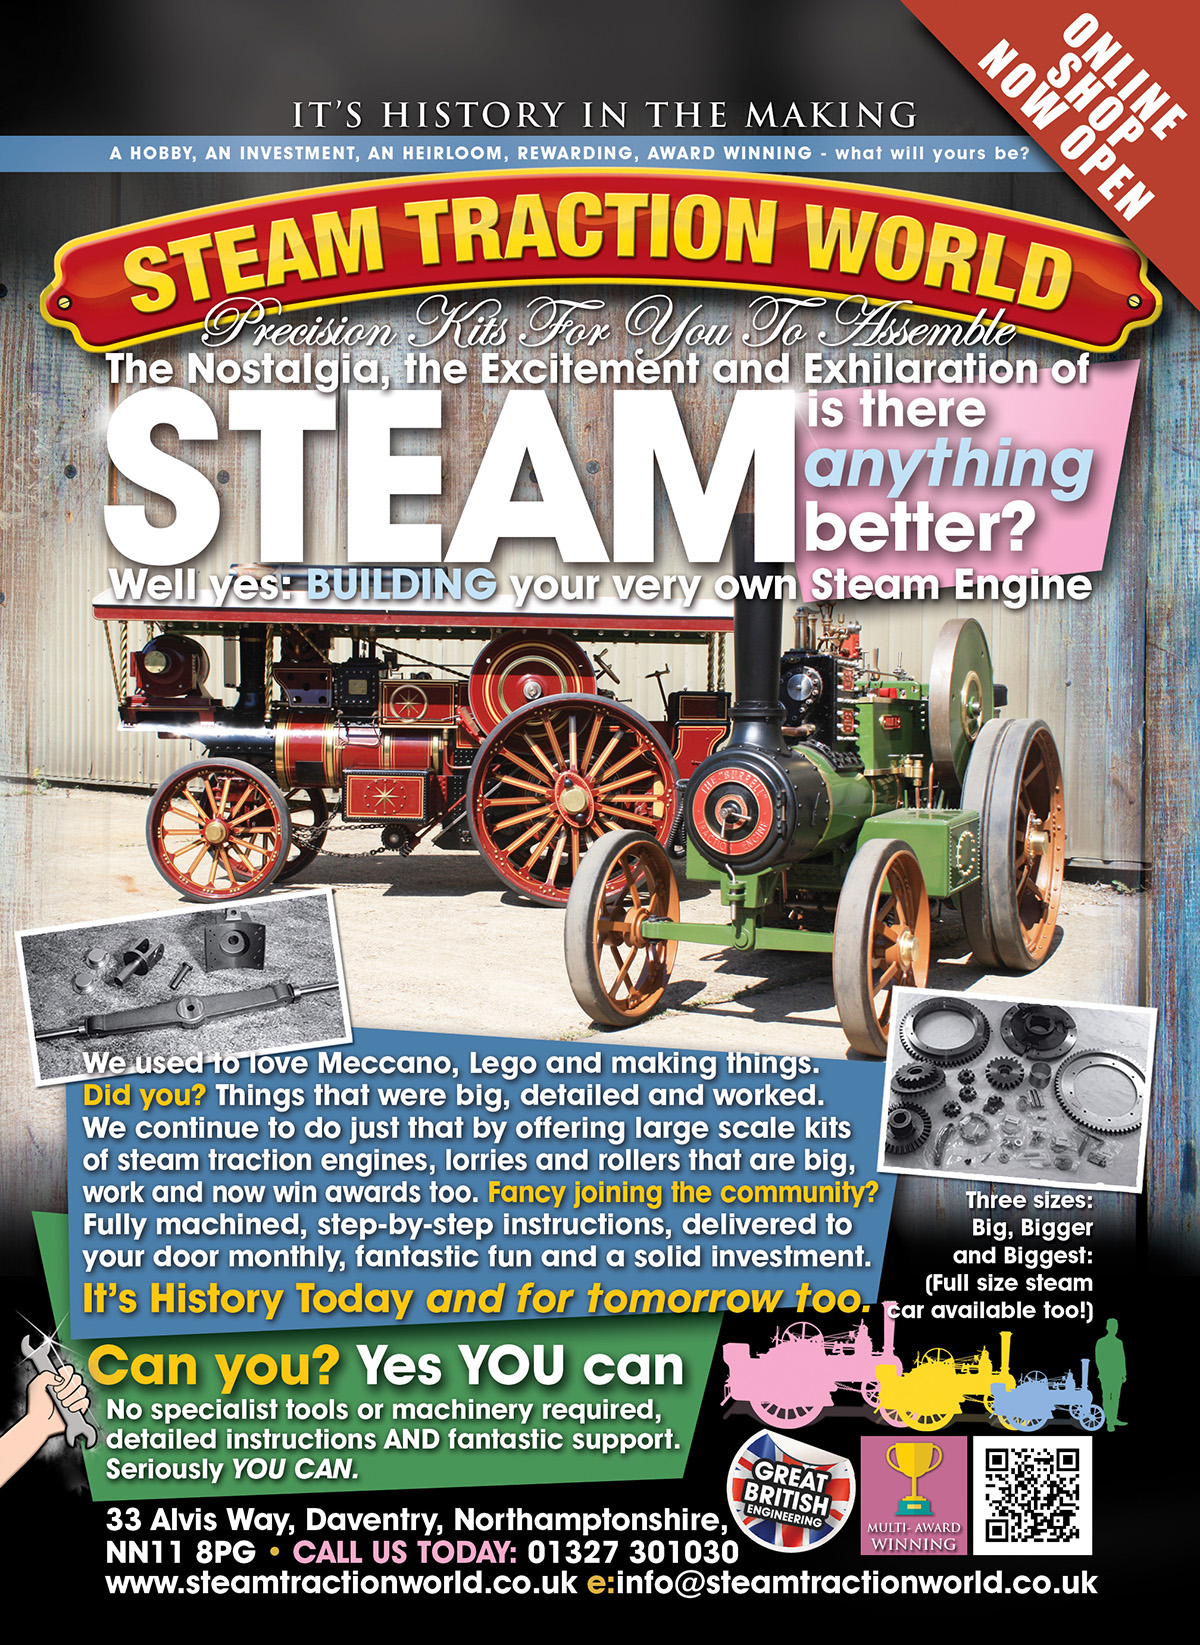 USA build a steam engine